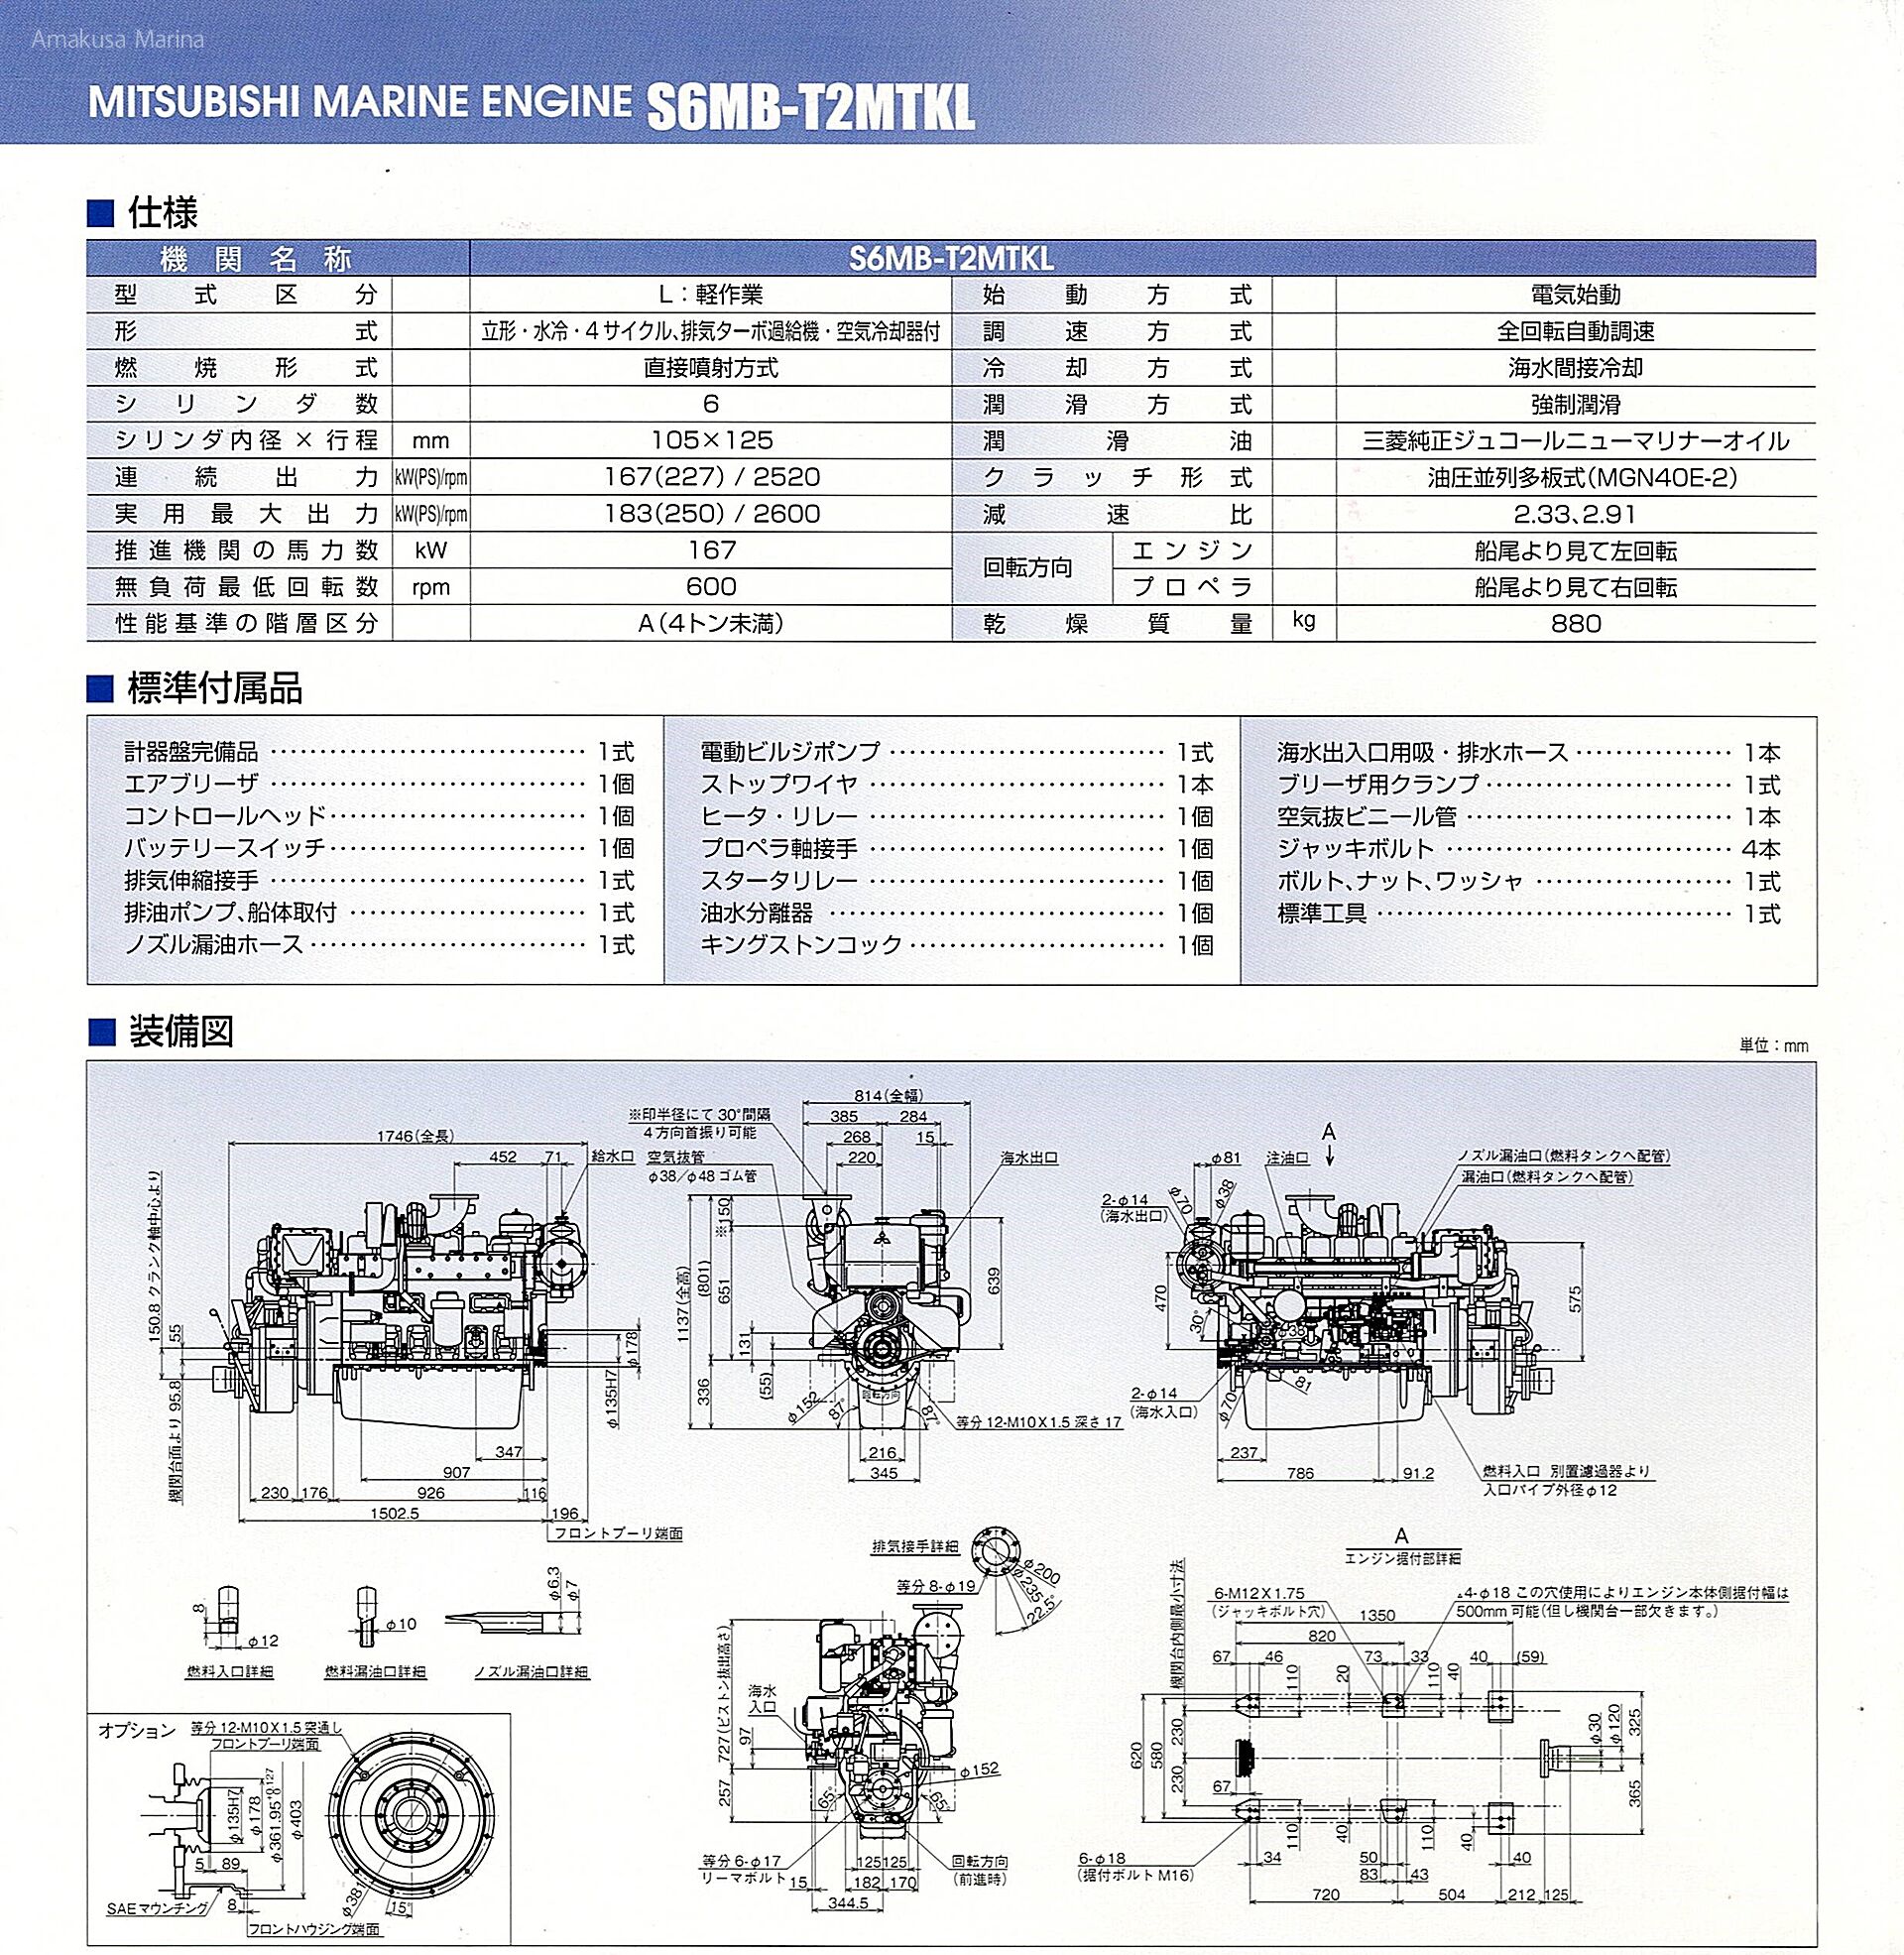 三菱 S6MB-T2MTKL (2.91)280ps | 株式会社あまくさマリーナ